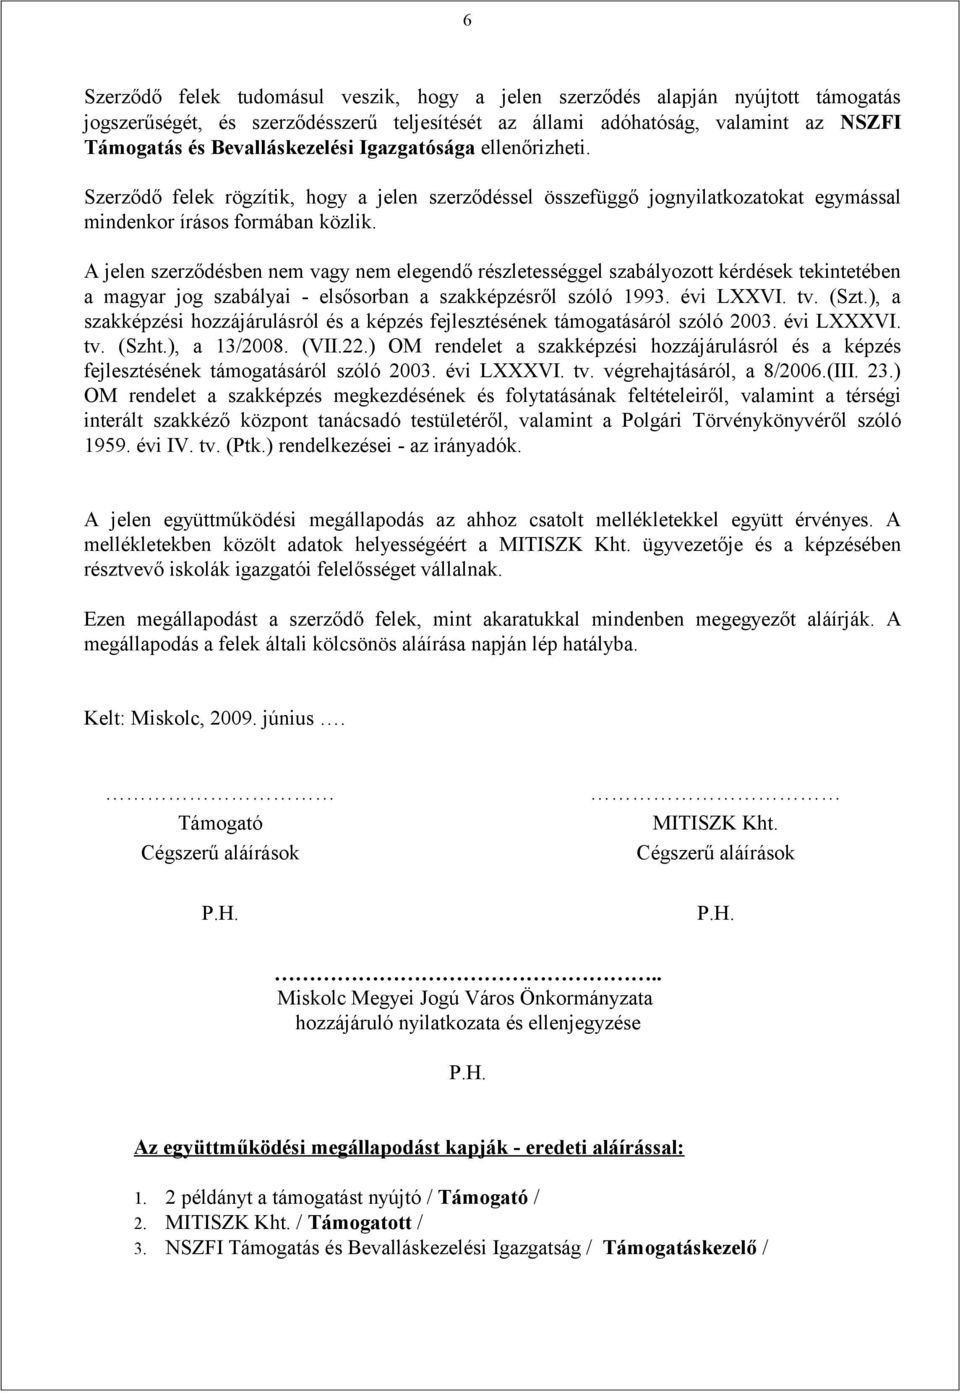 A jelen szerződésben nem vagy nem elegendő részletességgel szabályozott kérdések tekintetében a magyar jog szabályai - elsősorban a szakképzésről szóló 1993. évi LXXVI. tv. (Szt.